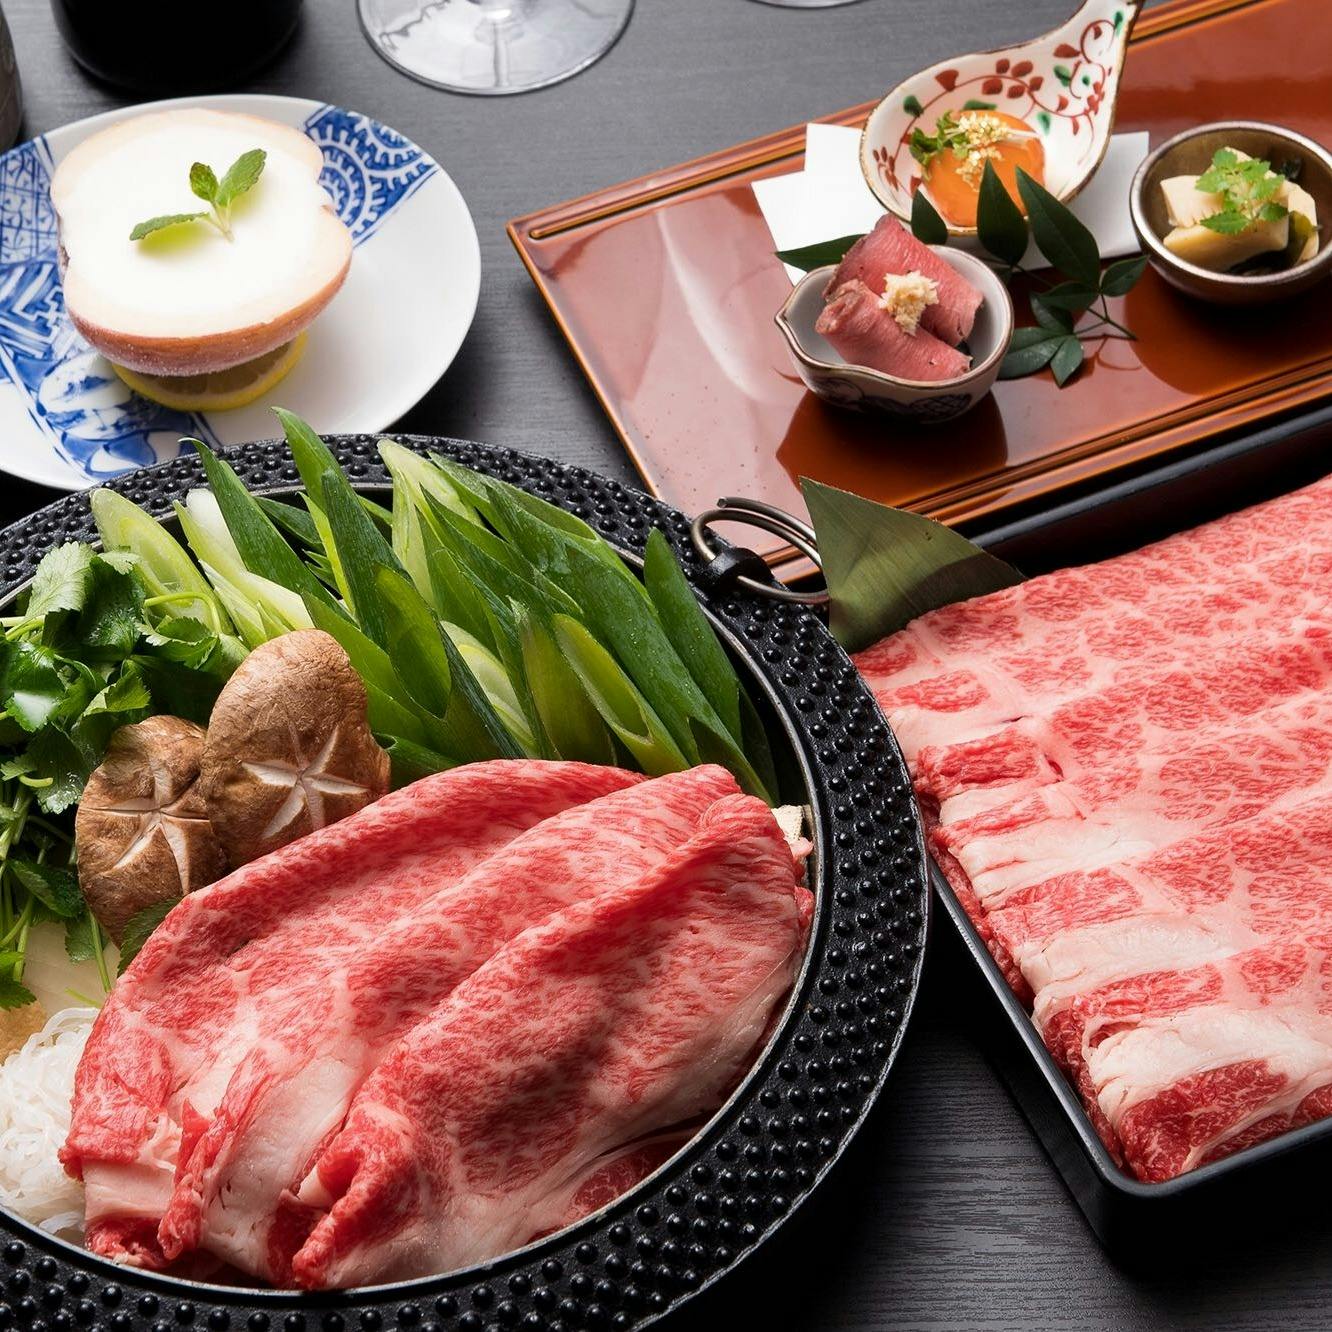 京都ダイニング正義 個室確約 特上の黒毛和牛を使用したすき焼きを含む全4品 通常コースよりお肉倍増 ディナー プラン メニュー 一休 Comレストラン